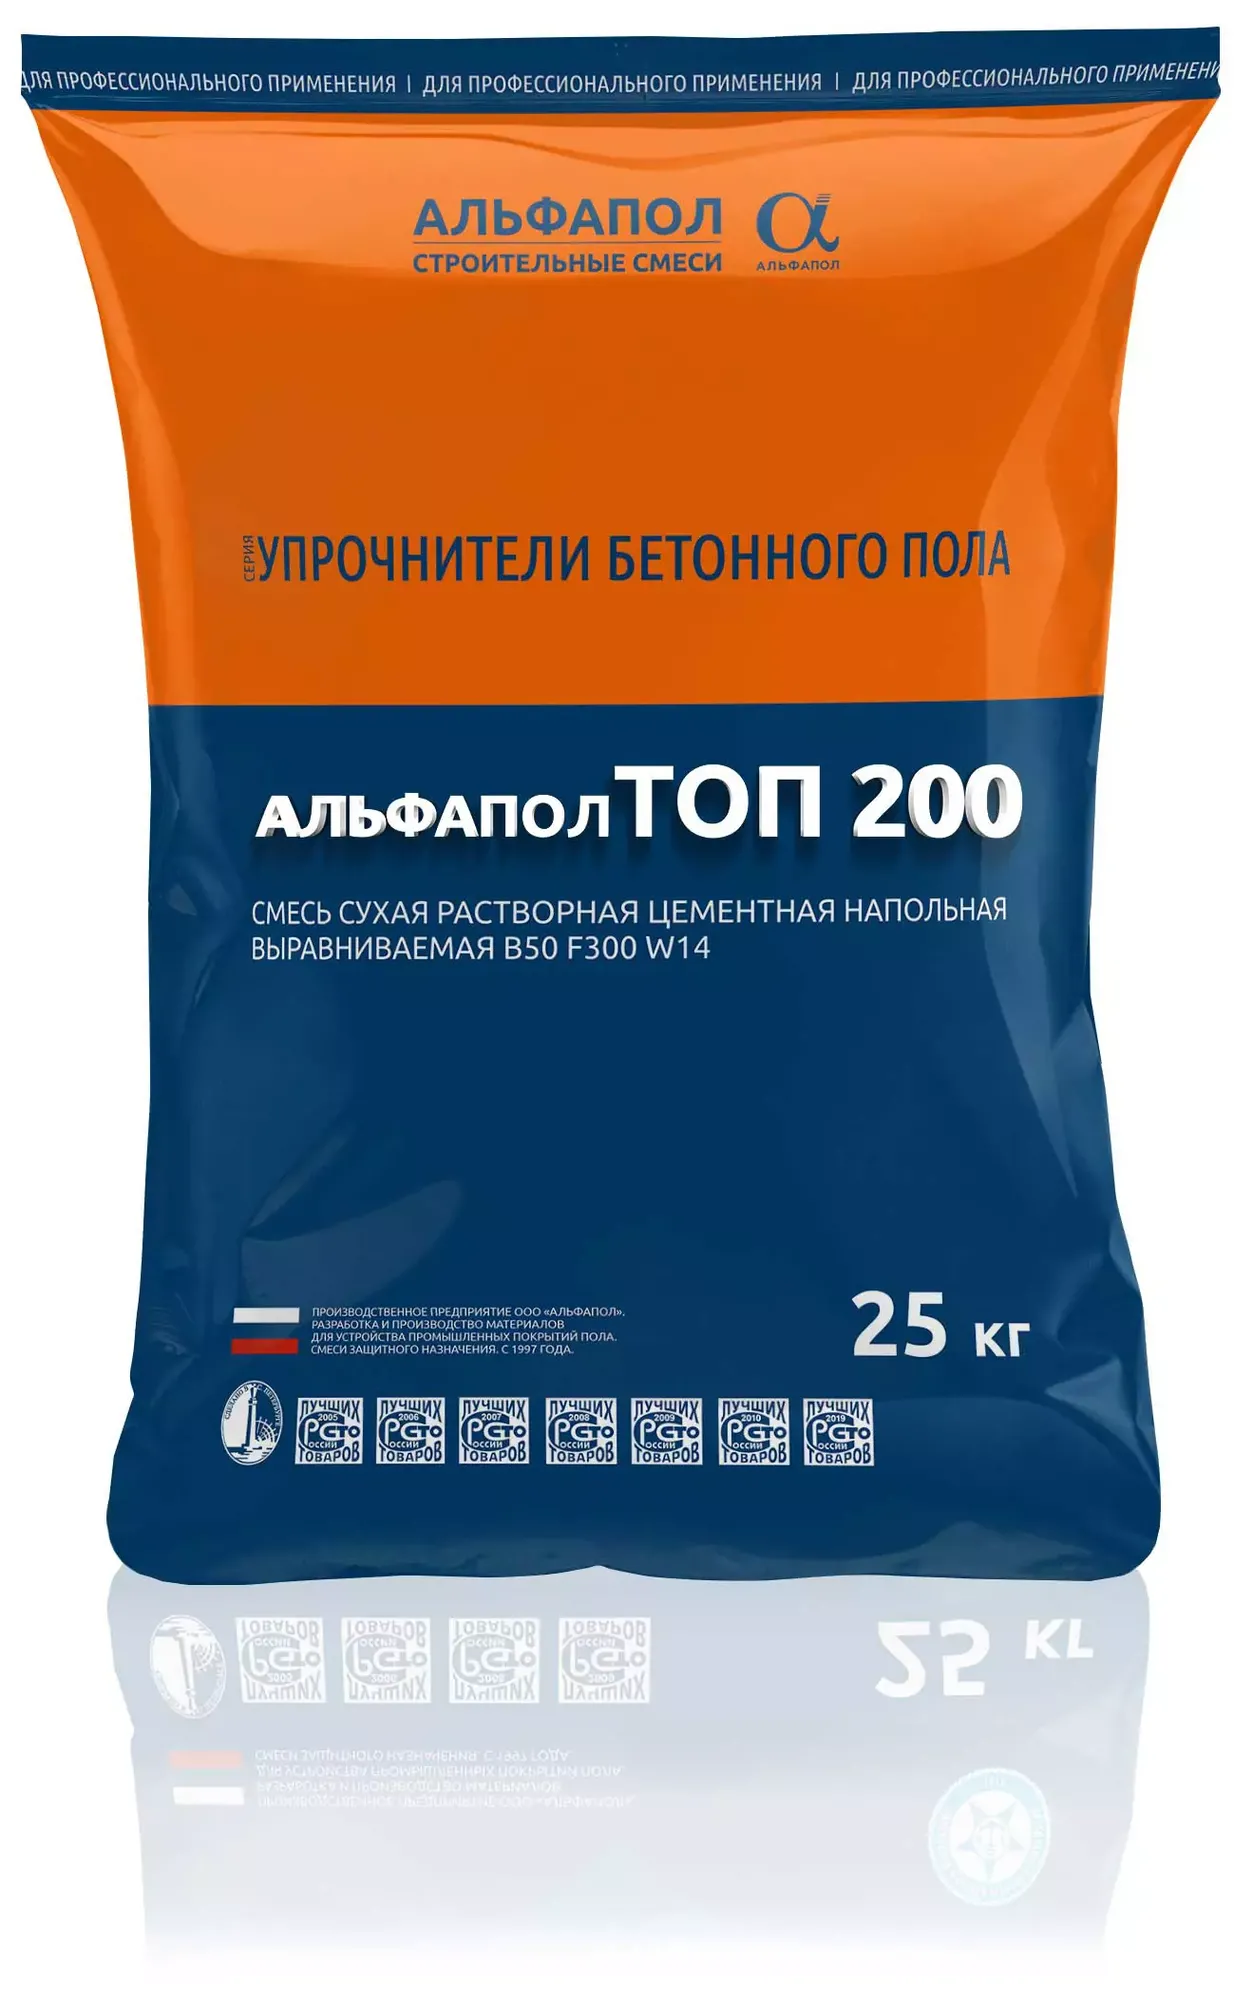 АЛЬФАПОЛ ТОП 200 АС жидкий антистатический топпинг для бетонных полов B50 F300 Пк2